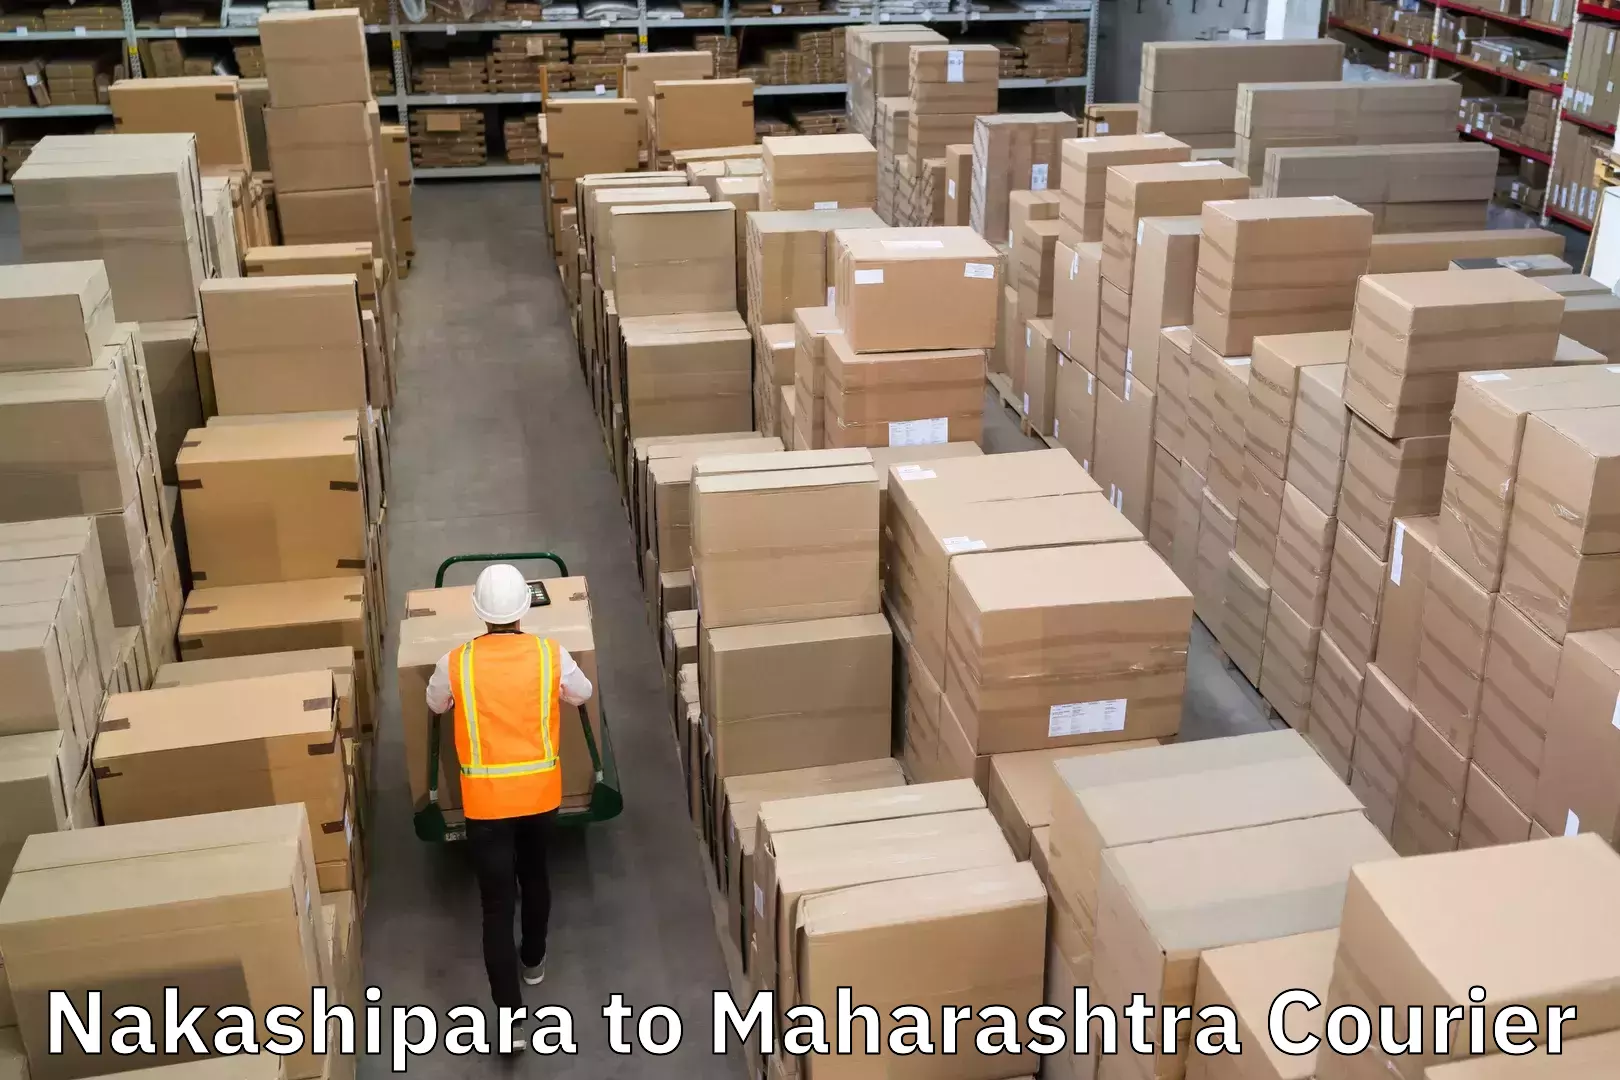 Sustainable shipping practices Nakashipara to Bhusawal